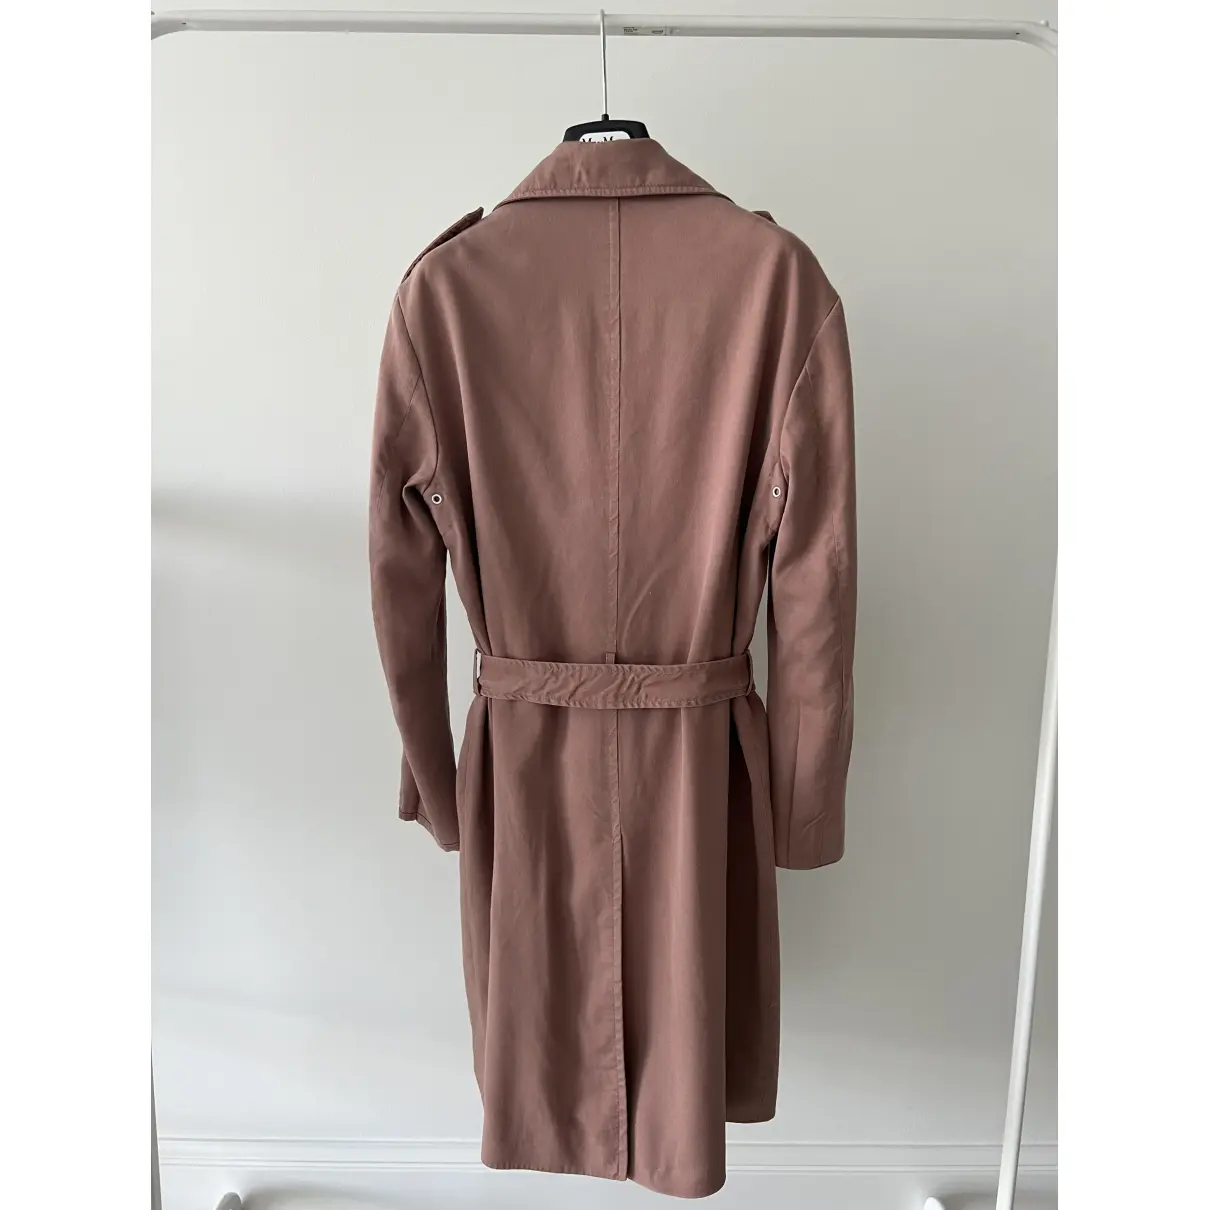 Buy All Saints Trench coat online